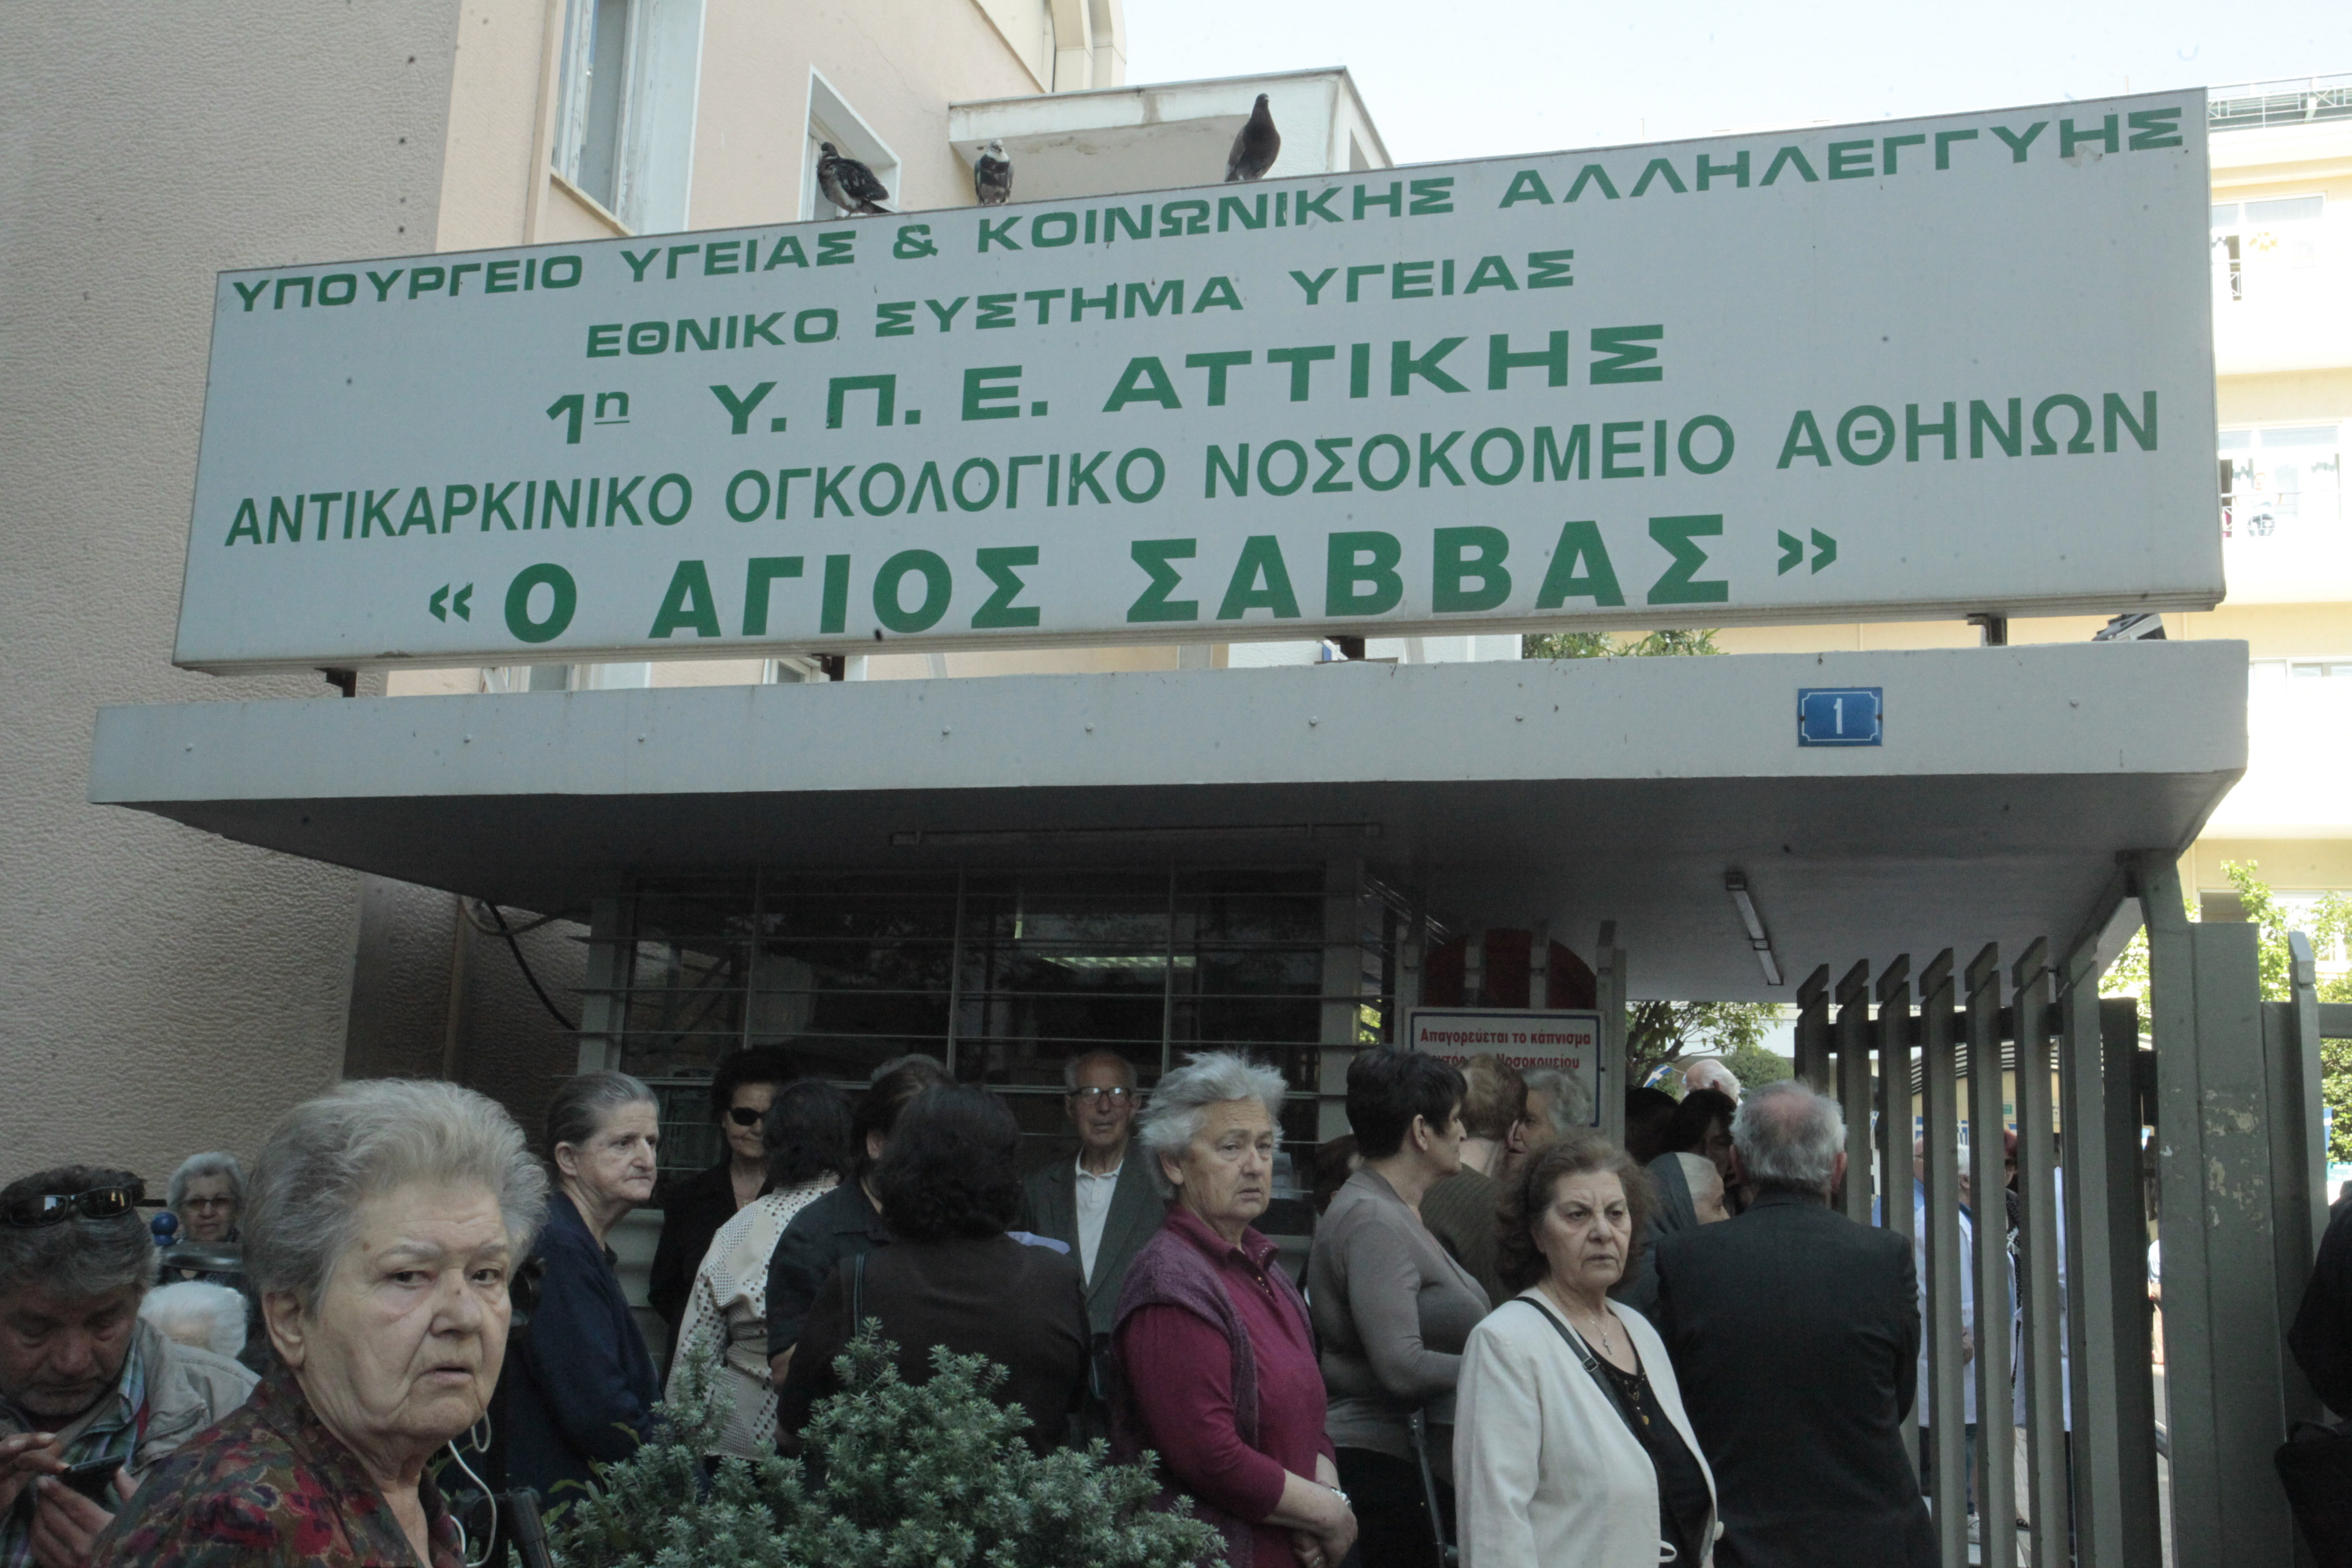 Εγκρίθηκαν 36 προσλήψεις στο Νοσοκομείο Αθηνών «Ο Άγιος Σάββας»